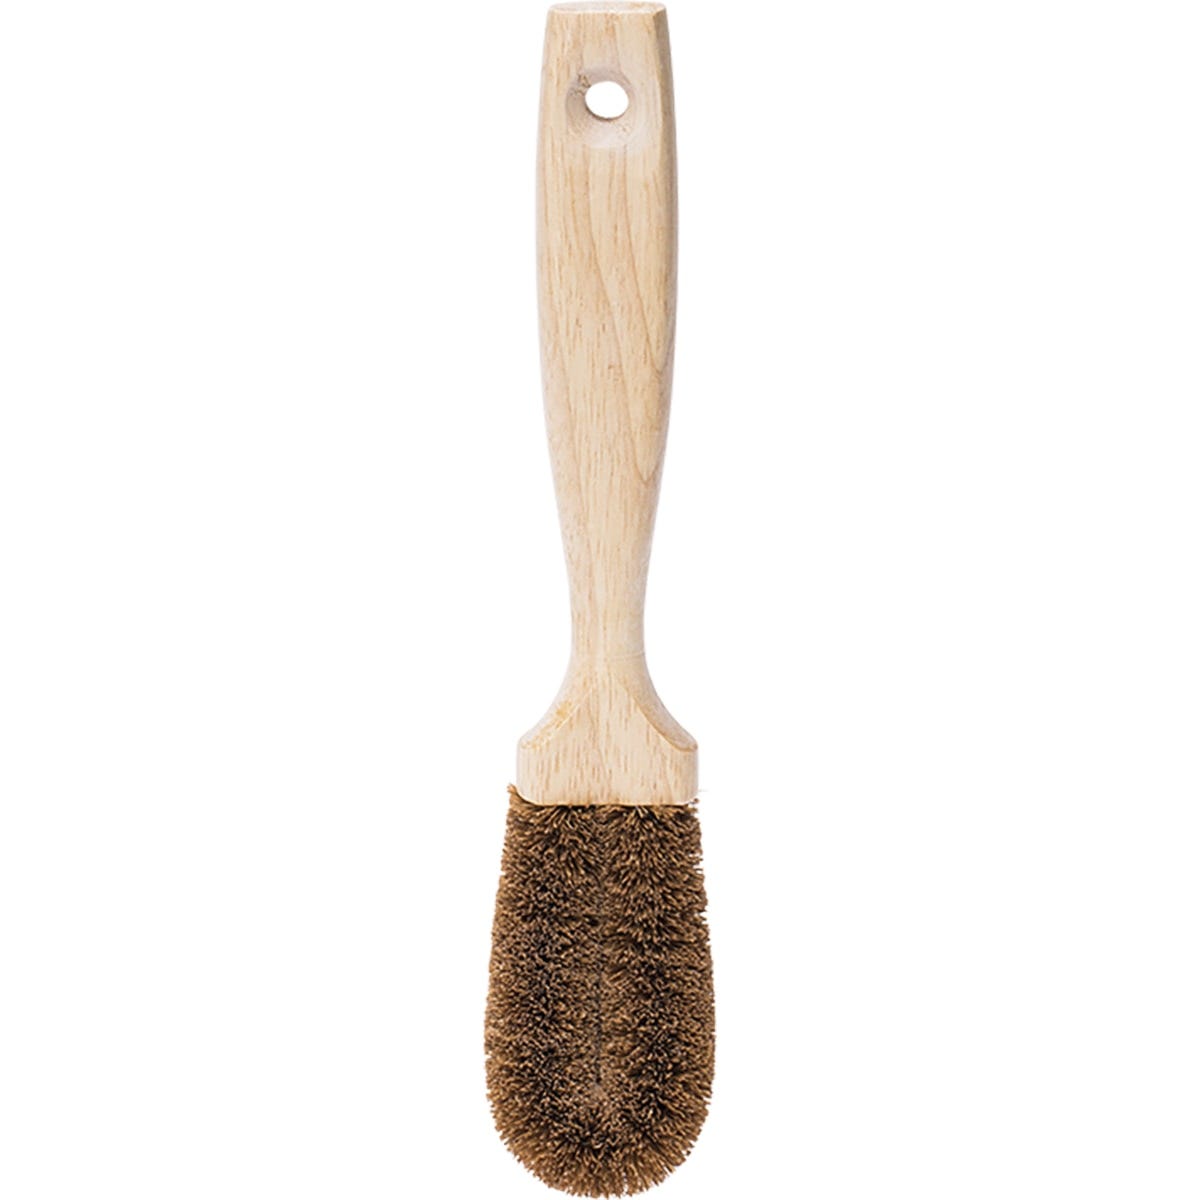 Ecococonut Dish Brush